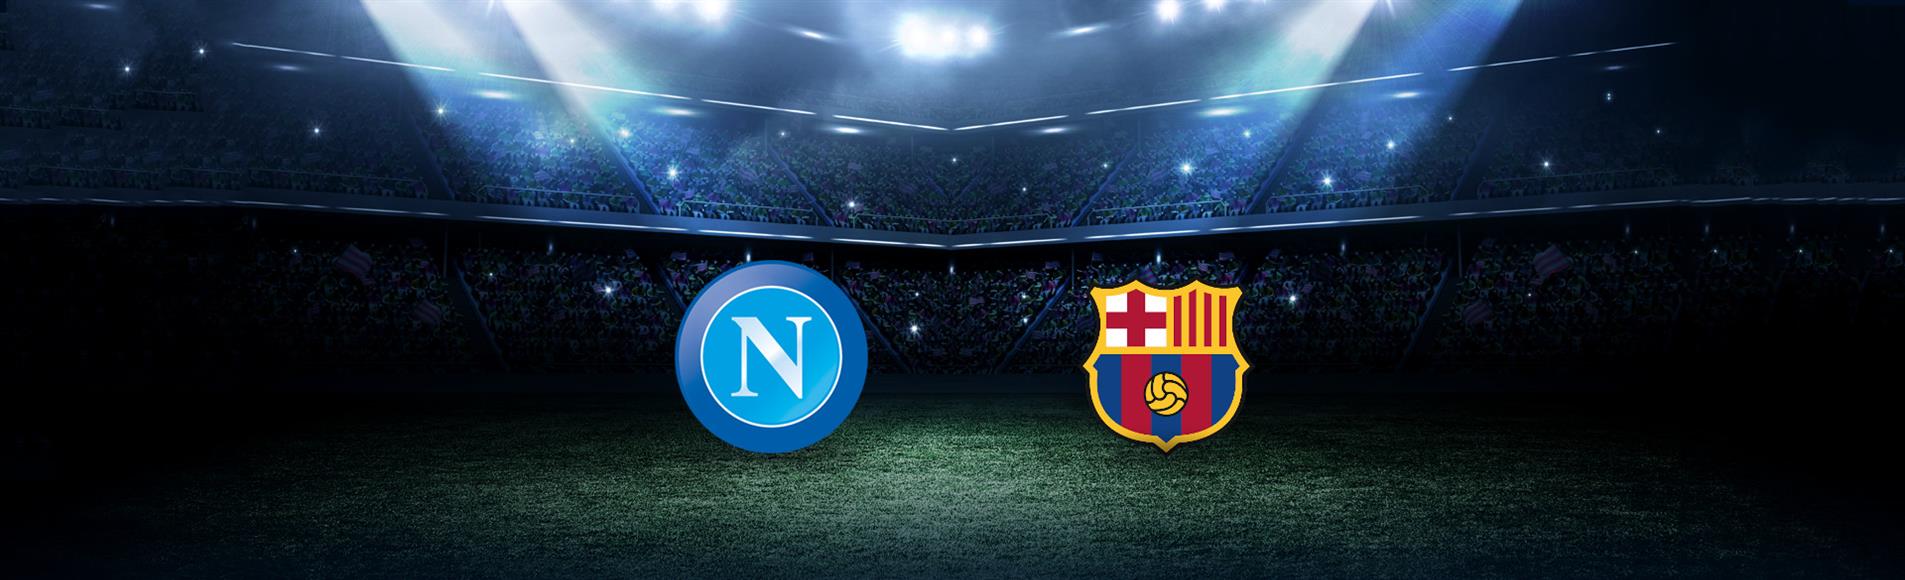 Napoli-Barcellona: dove vedere la partita in tv e diretta streaming - NAPOLI CALCIO